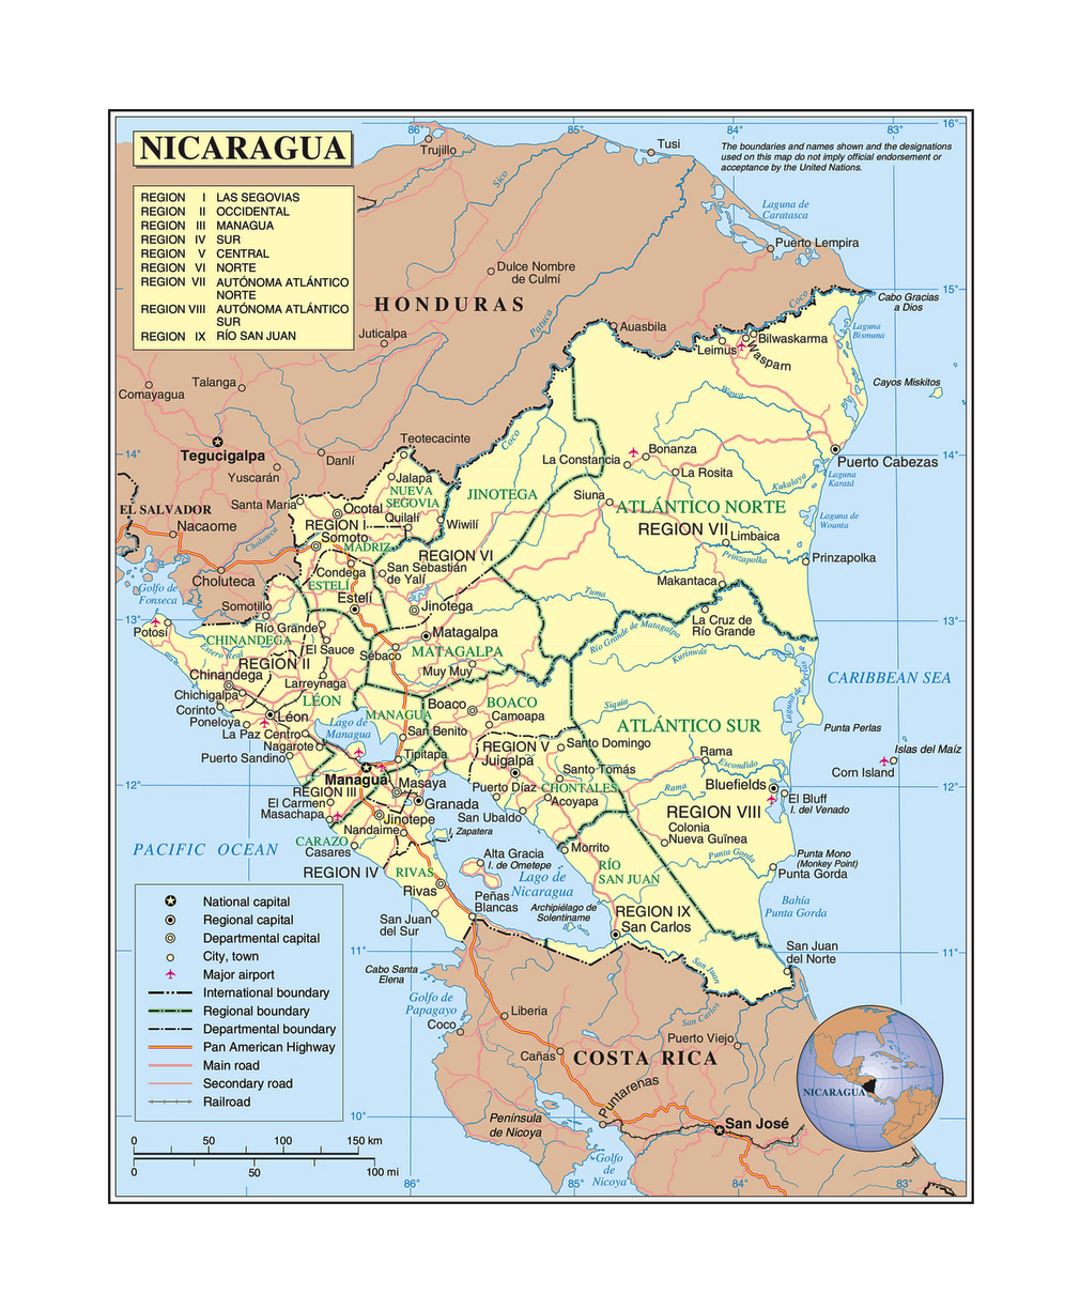 Детальная политическая и административная карта Никарагуа с дорогами, железными дорогами, городами и аэропортами